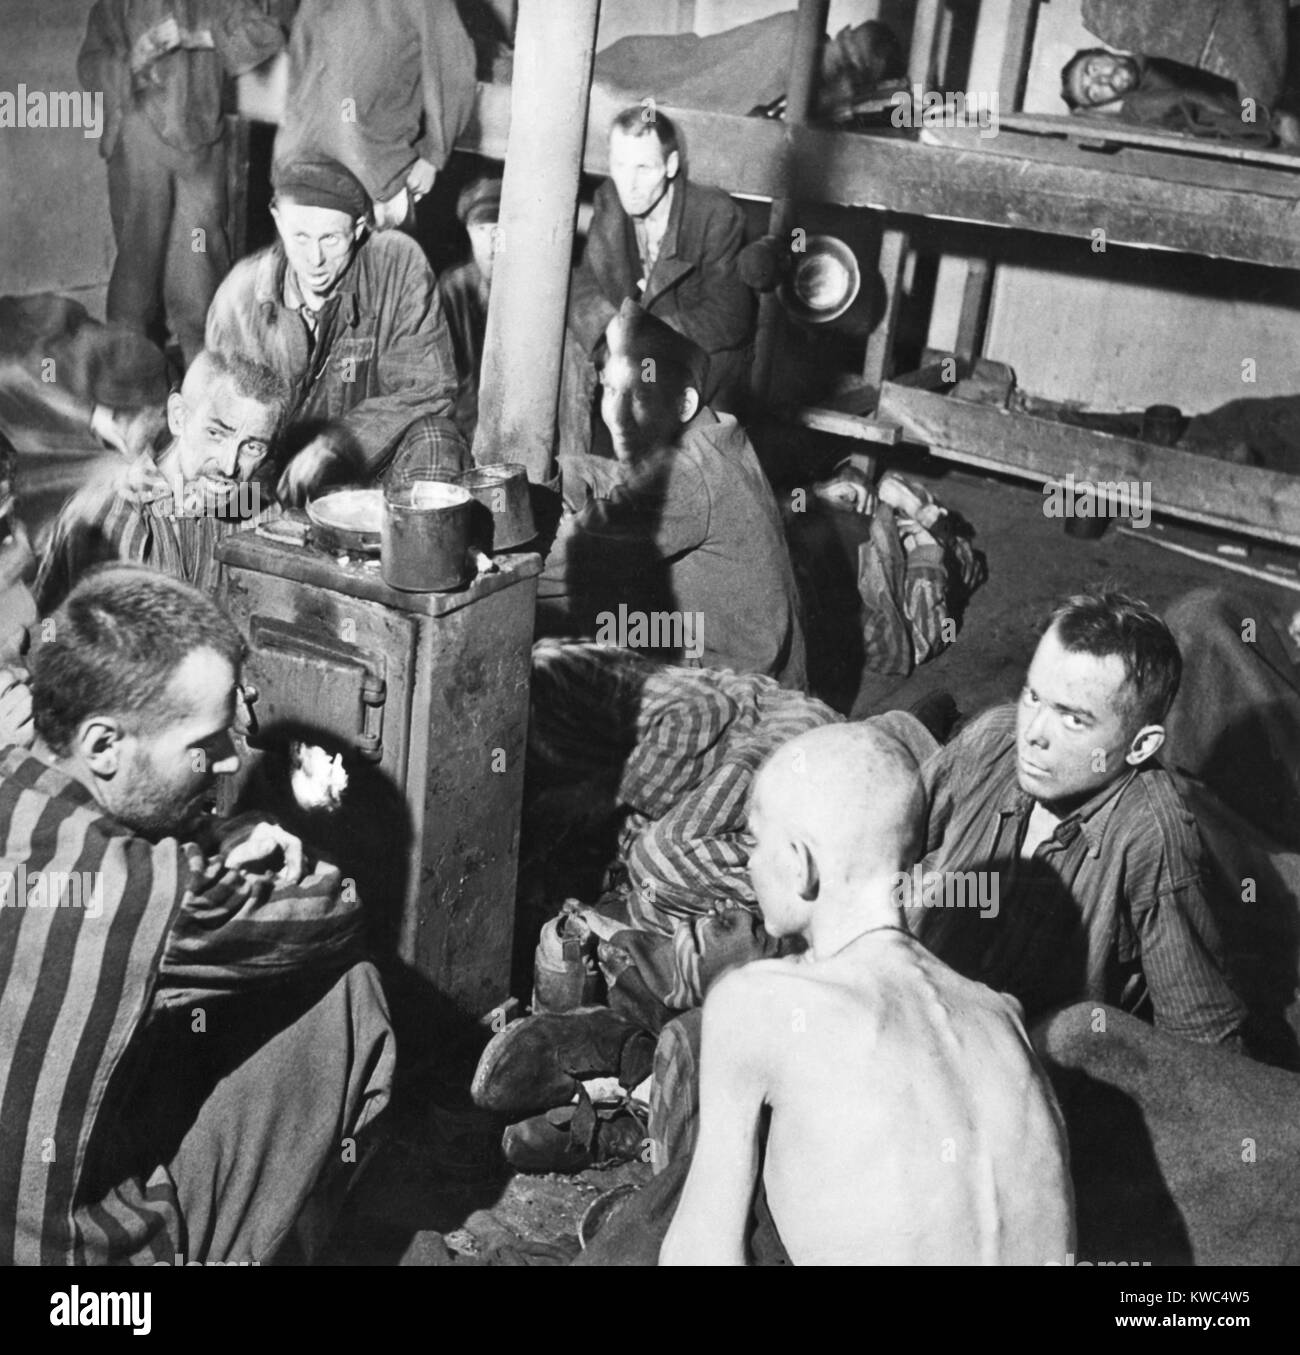 Camp de Prisonniers Sandbostel survivants s'asseoir autour d'une cuisinière feu après la libération, le 30 avril 1945. Ils étaient parmi les 8000 prisonniers politiques et civiles logées séparément des traités et bien pire que 15 000 prisonniers militaires alliées. L'homme sur le plancher à l'arrière de cette photo est mort, mais les autres ne pas en tenir compte. (BSLOC___2015 13 12) Banque D'Images